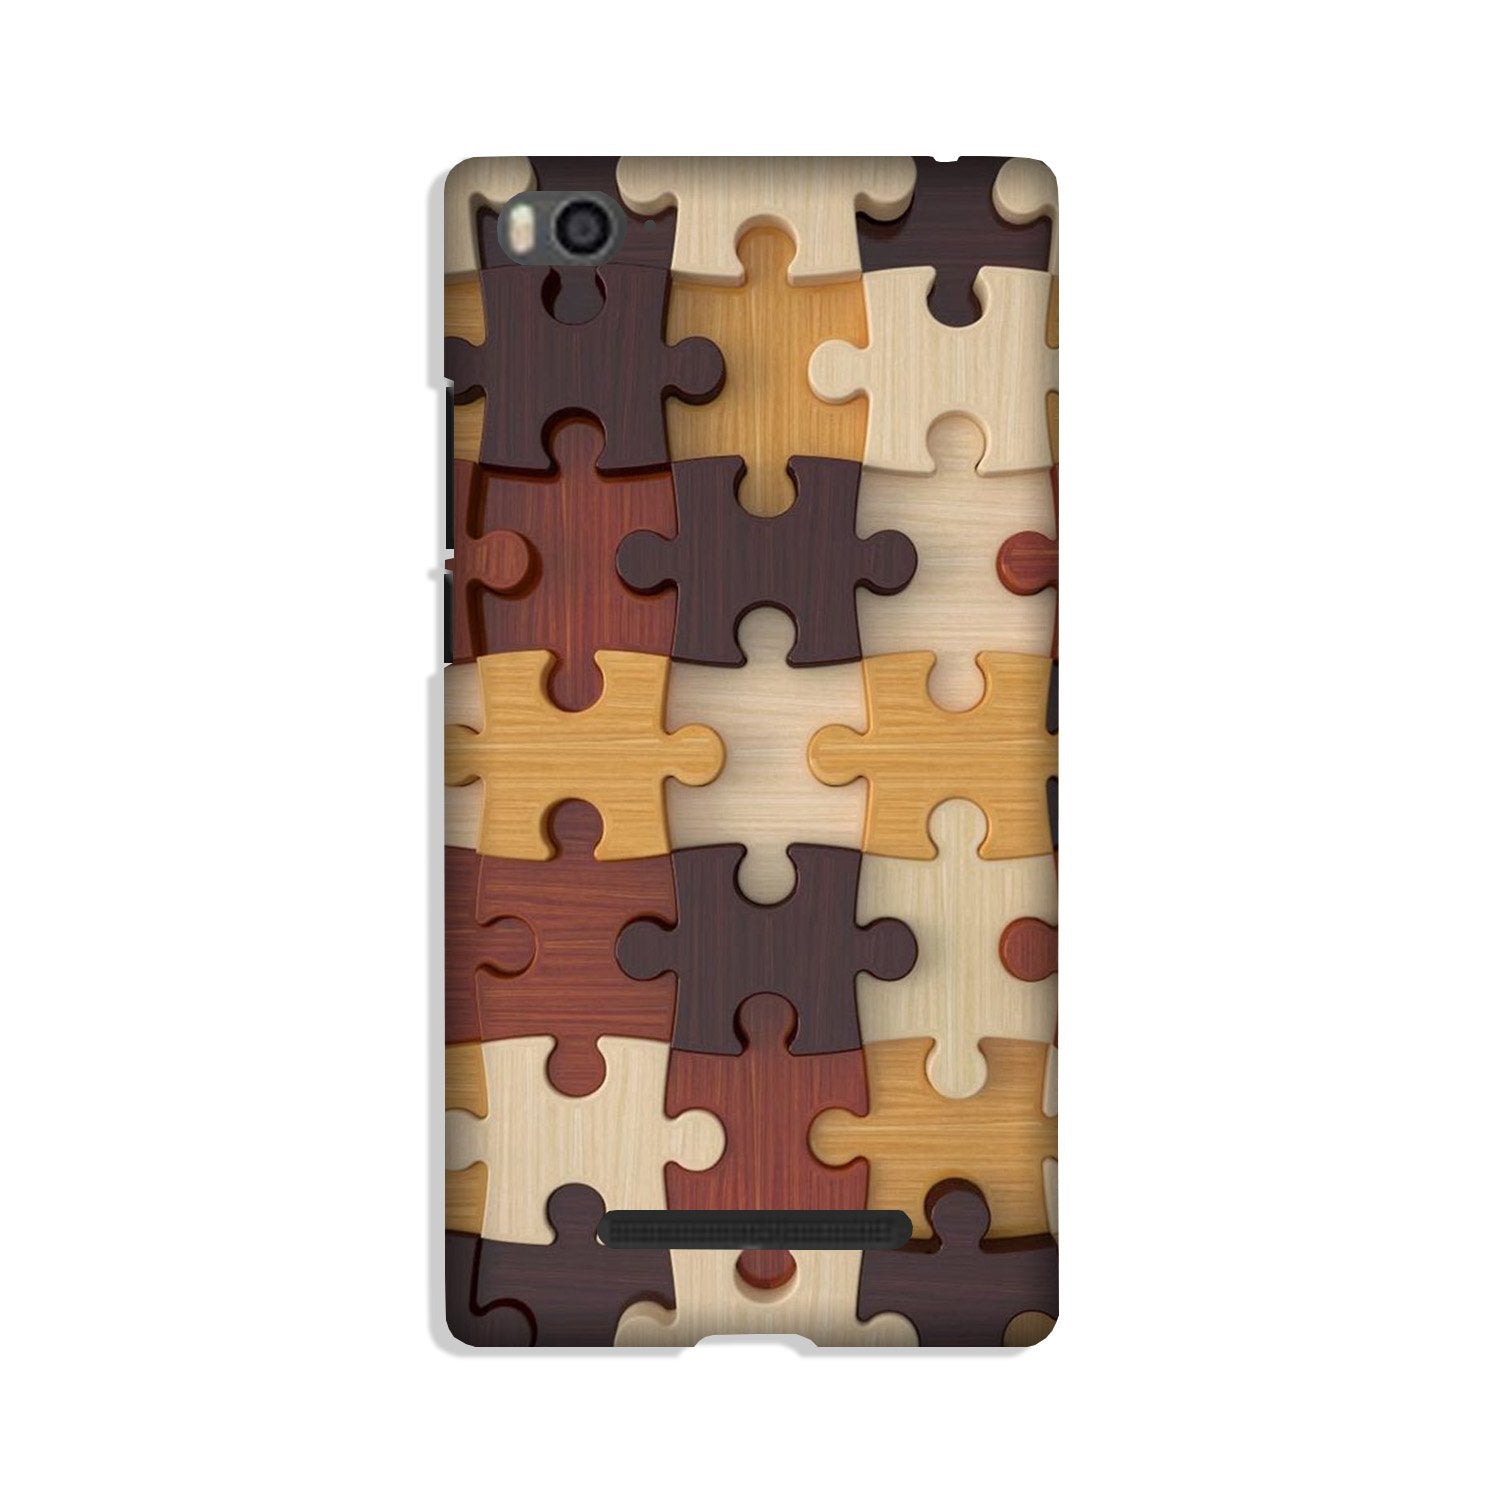 Puzzle Pattern Case for Xiaomi Mi 4i (Design No. 217)